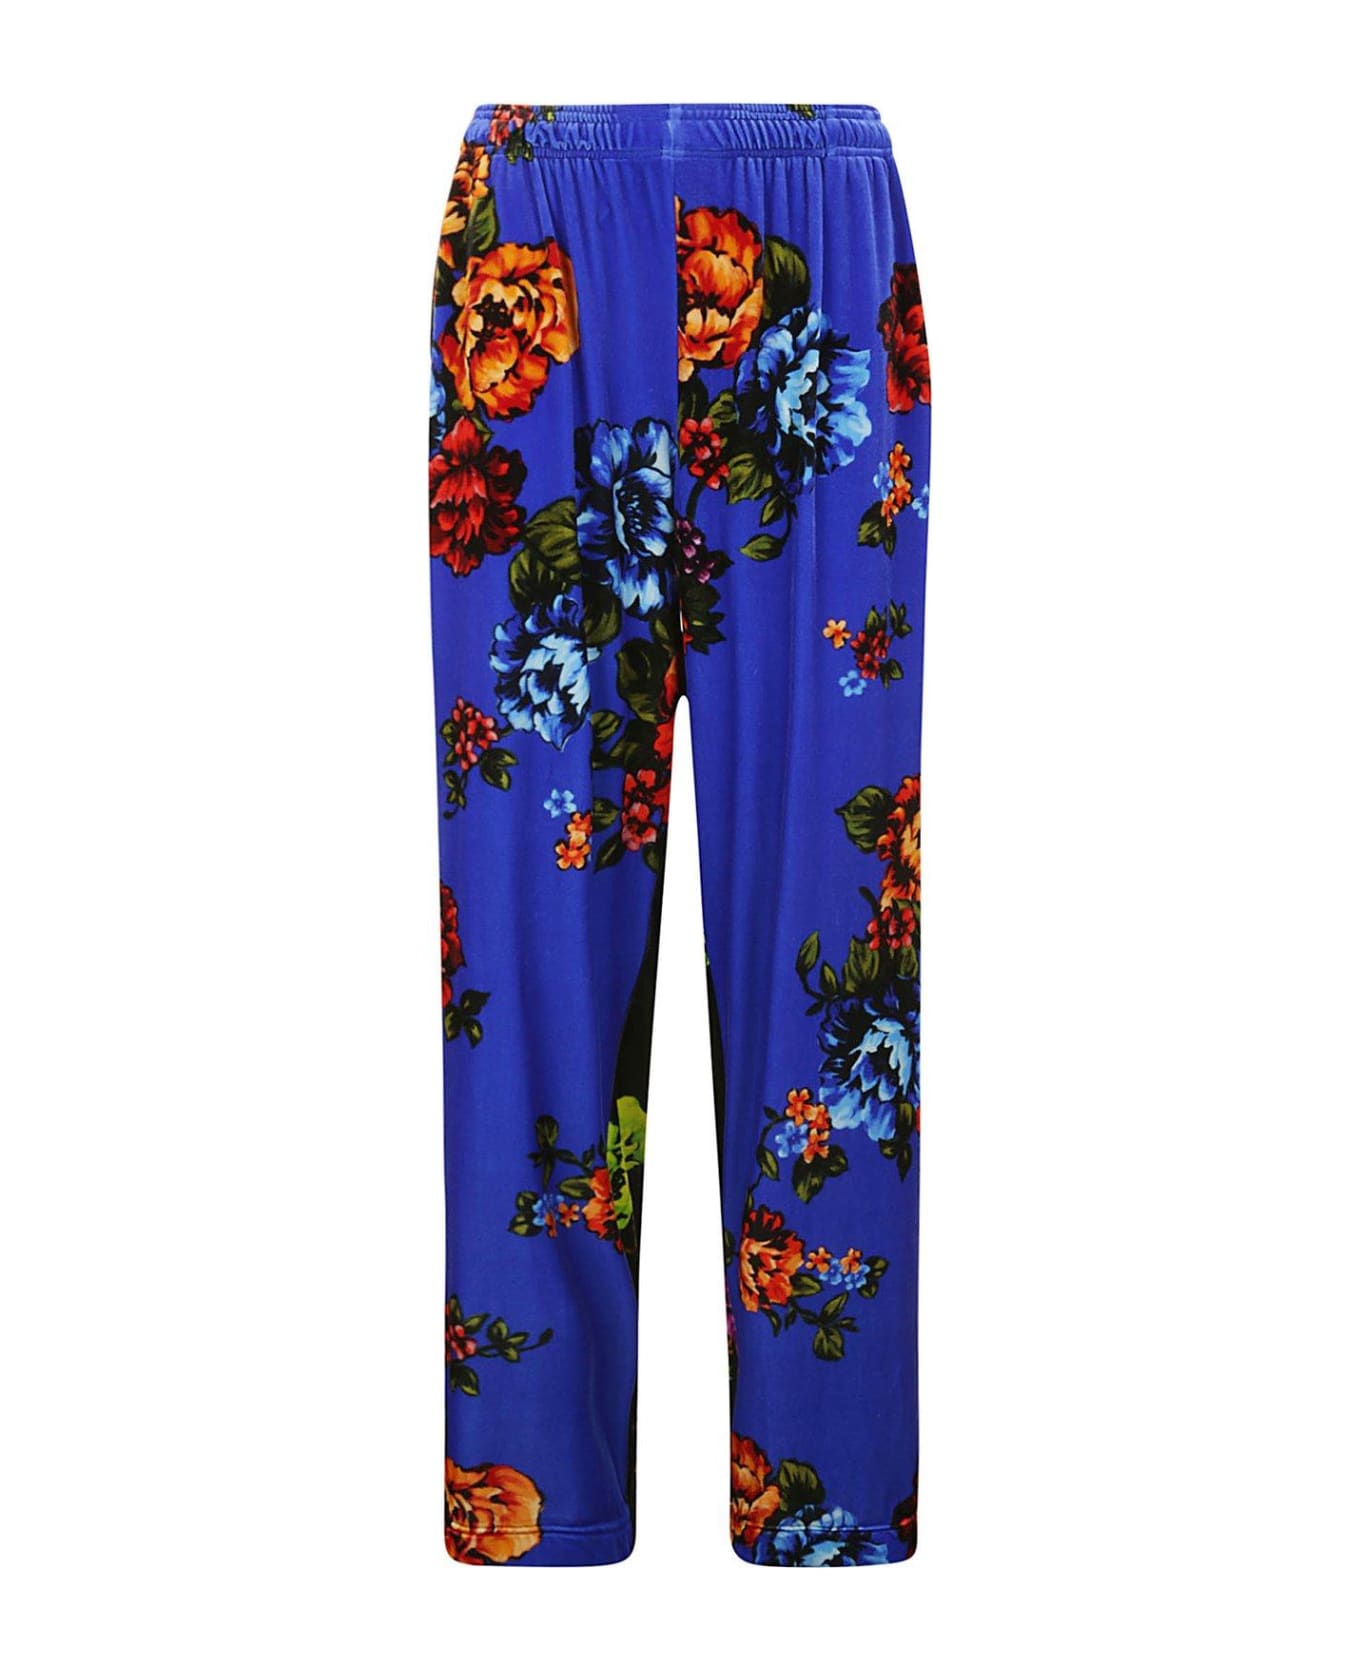 VETEMENTS Floral Print Panelled Pants - BLUE/BLACK